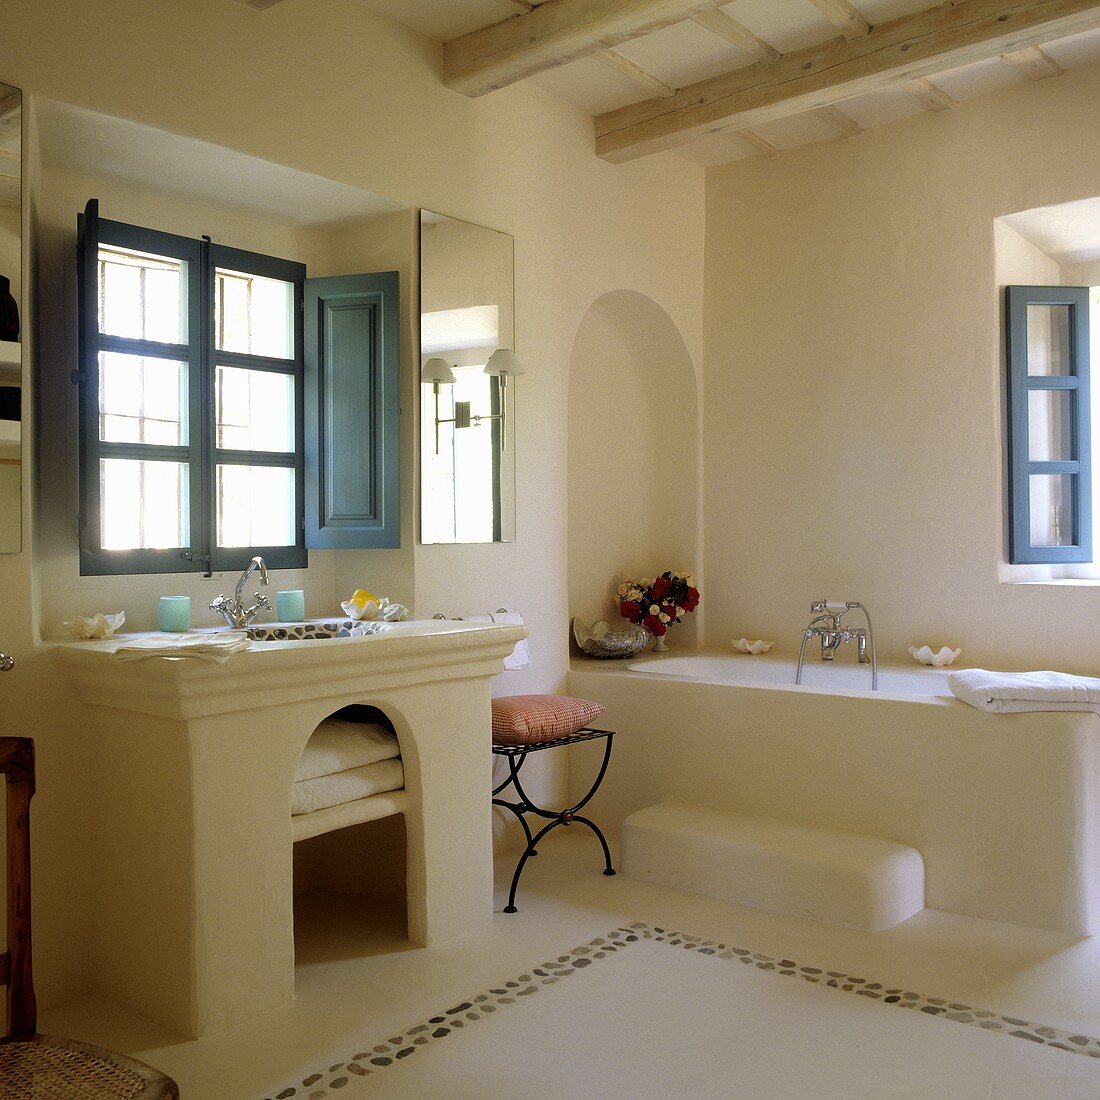 Gemauerte Badeinrichtung im spanischen Stil mit blauen Fenstern und Innenläden